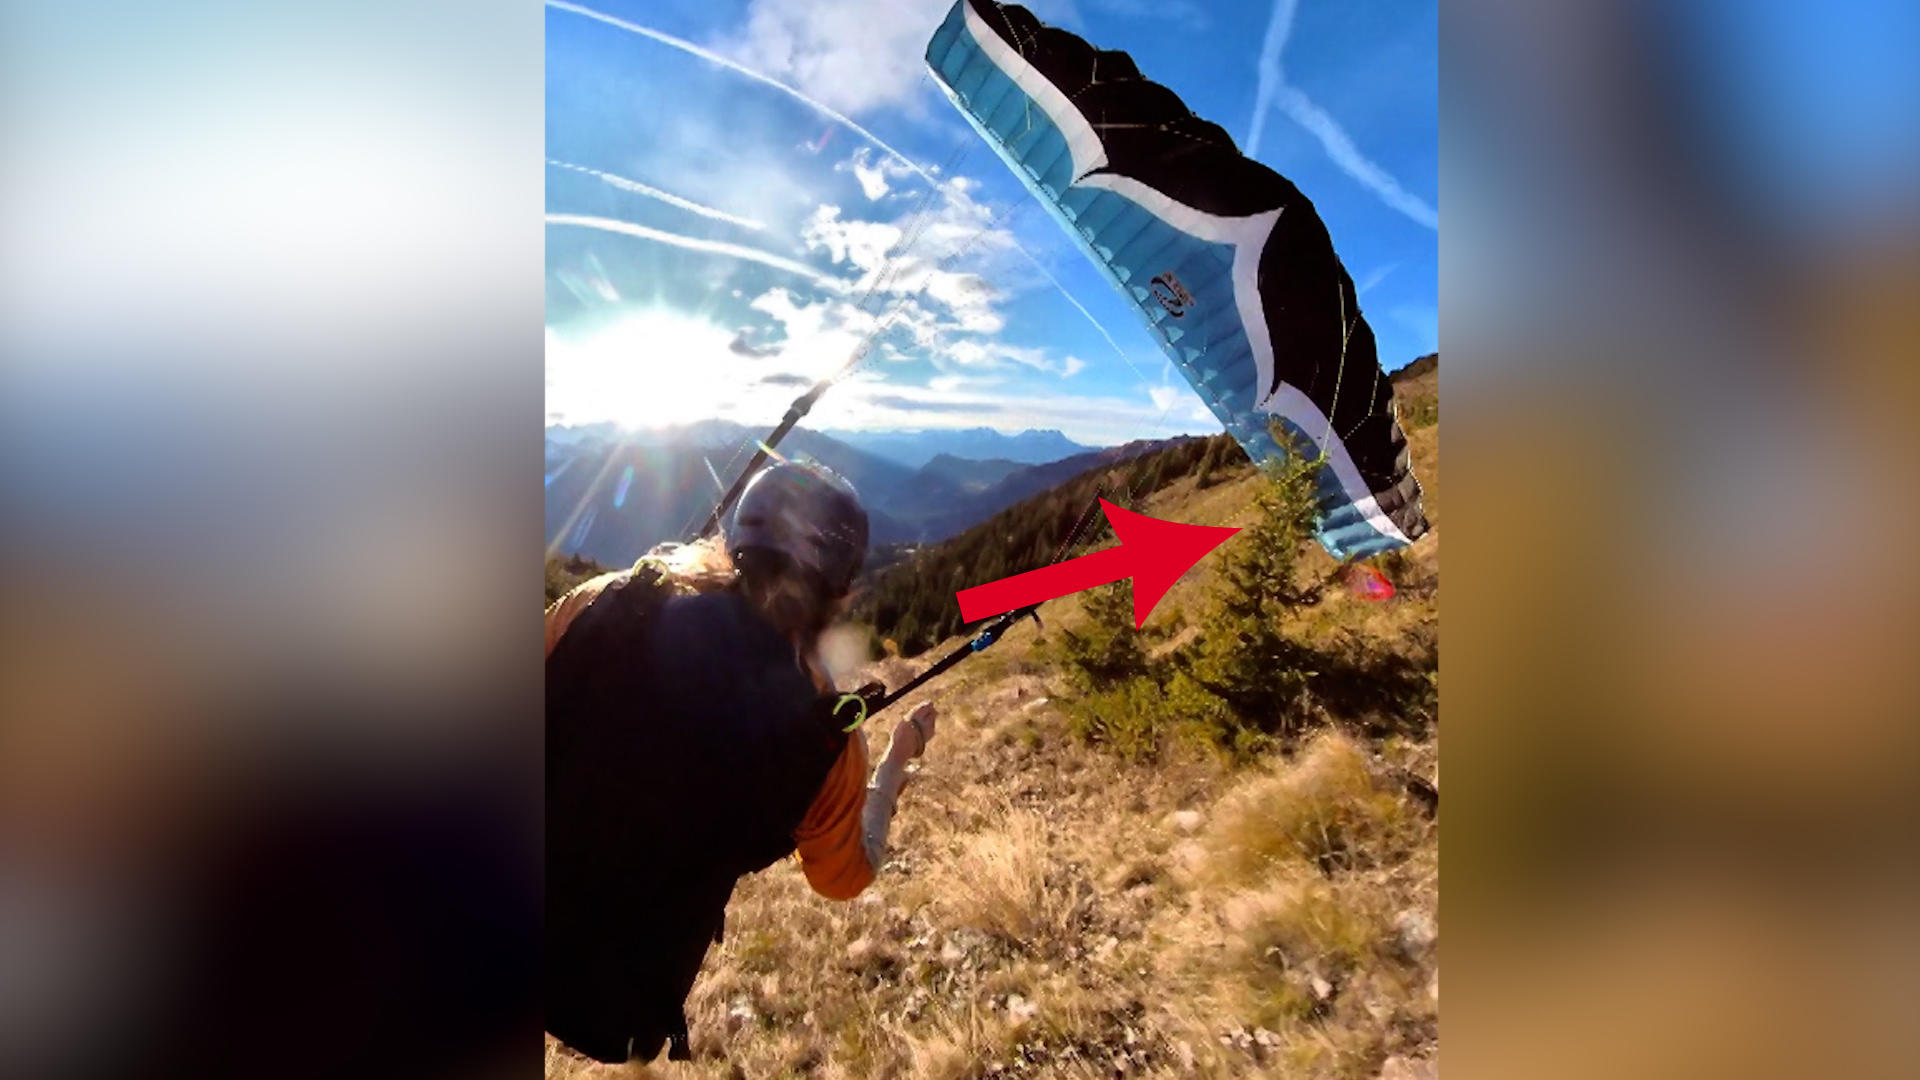 Paraglider-Panne! Schweizer stürzt nach waghalsigem Stunt ab Highspeed-Rolle in der Luft